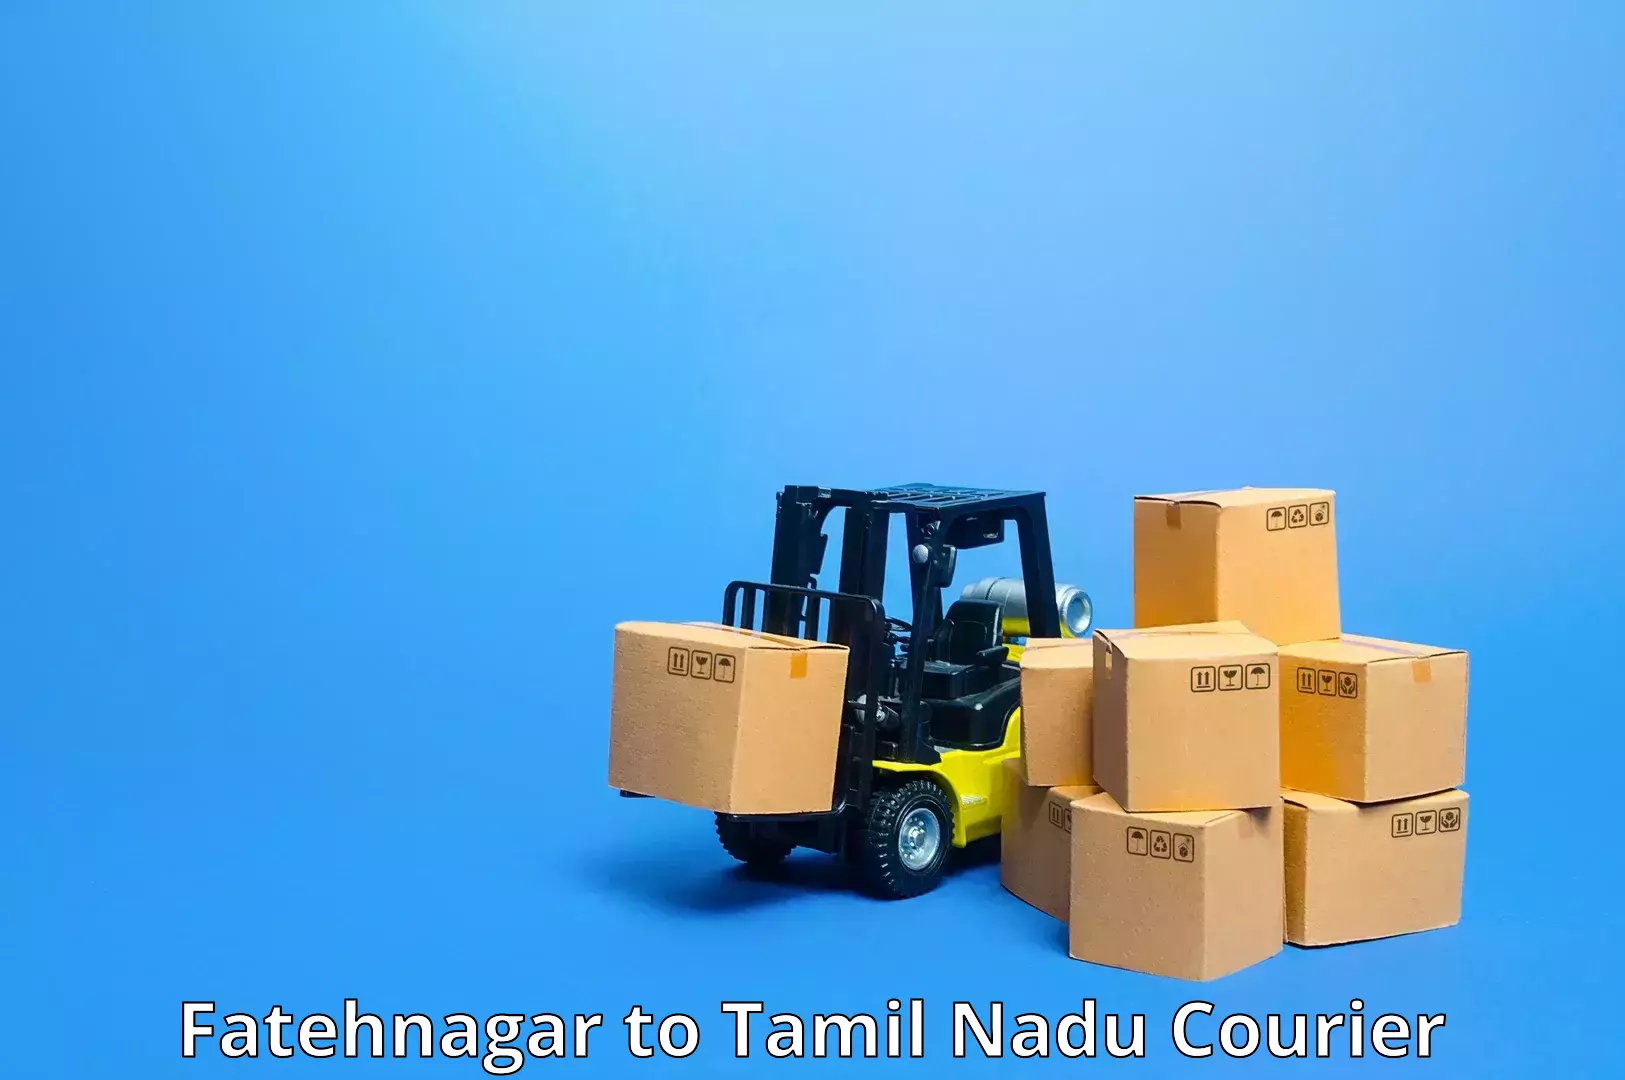 Cargo delivery service Fatehnagar to Kangeyam